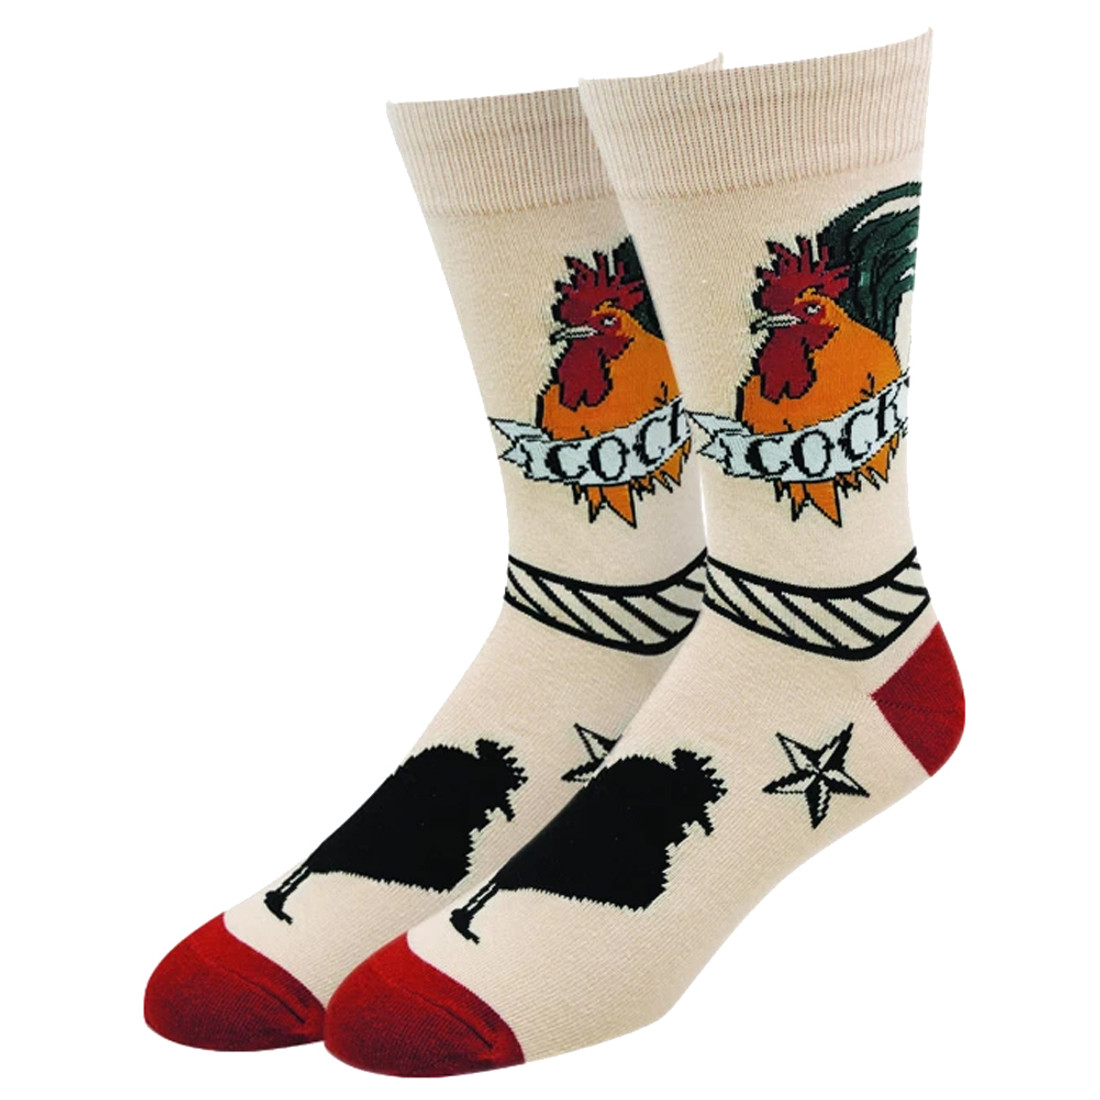 Get Cocky Rooster Men's Crew Socks